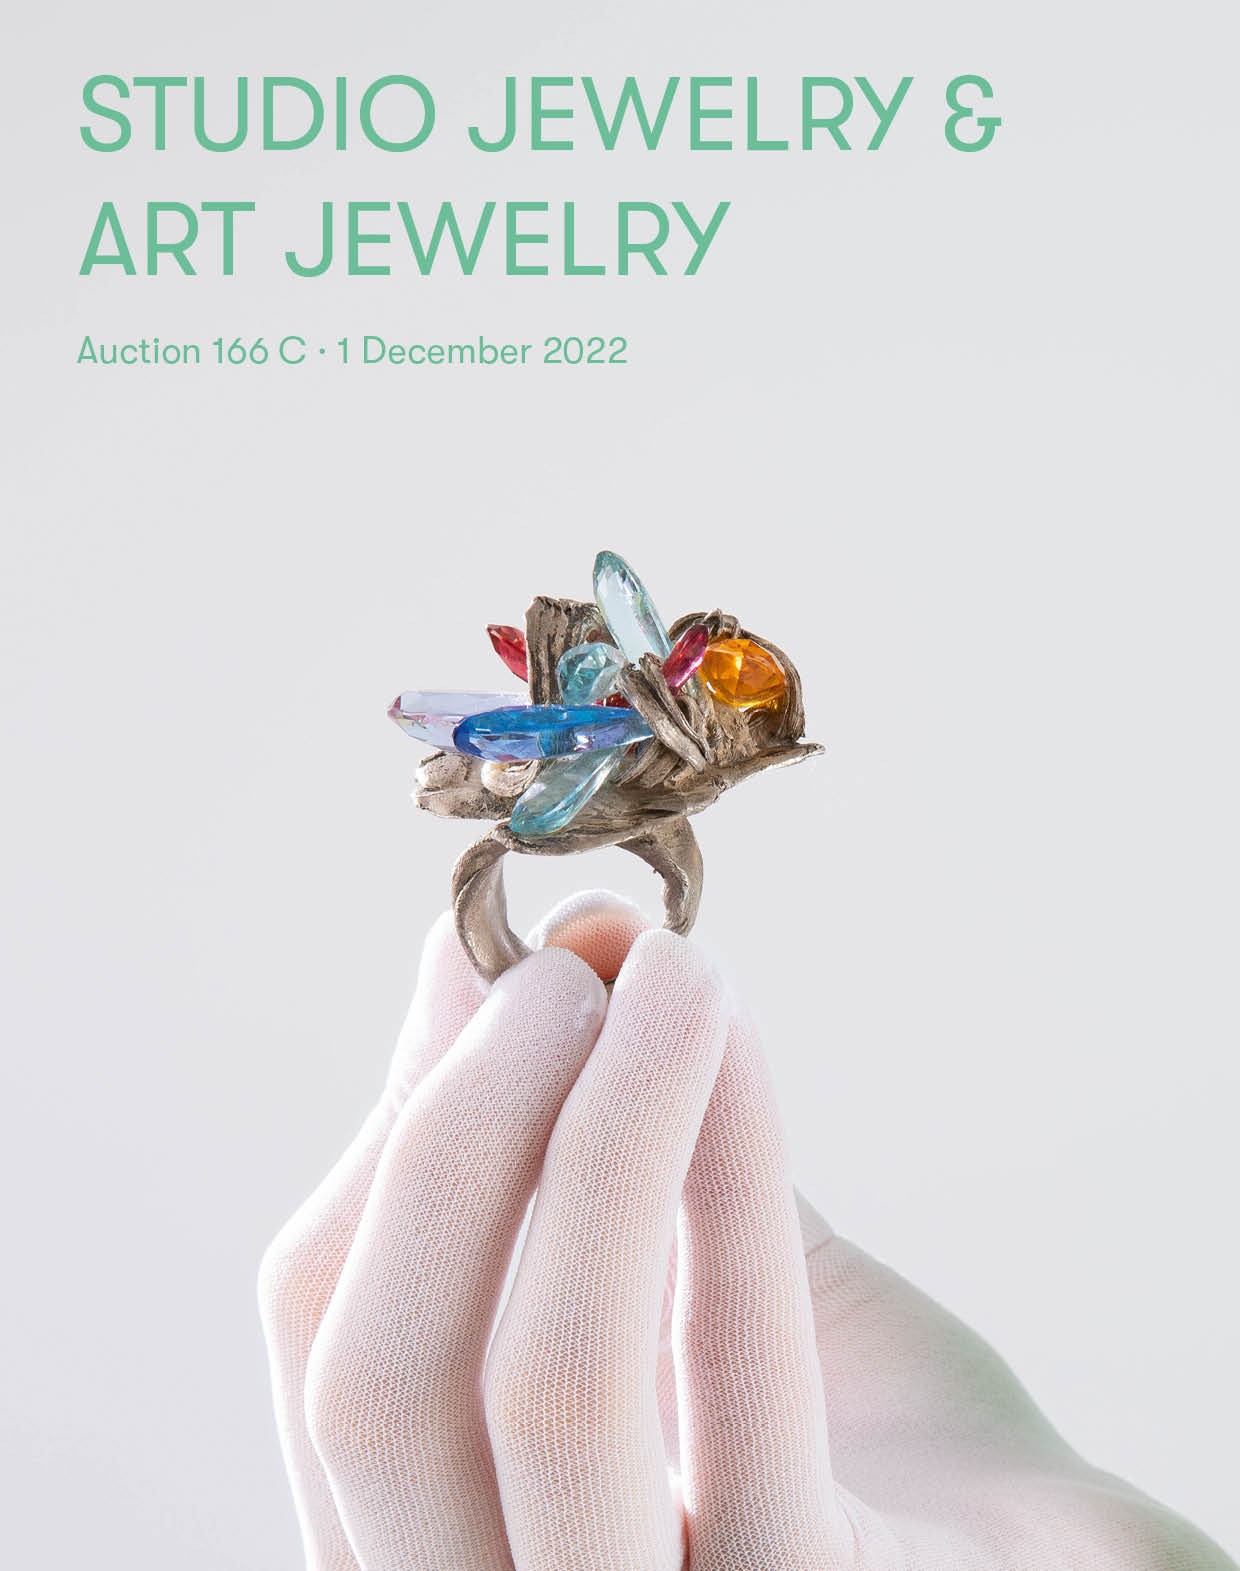 Studio Jewelry & Art Jewelry